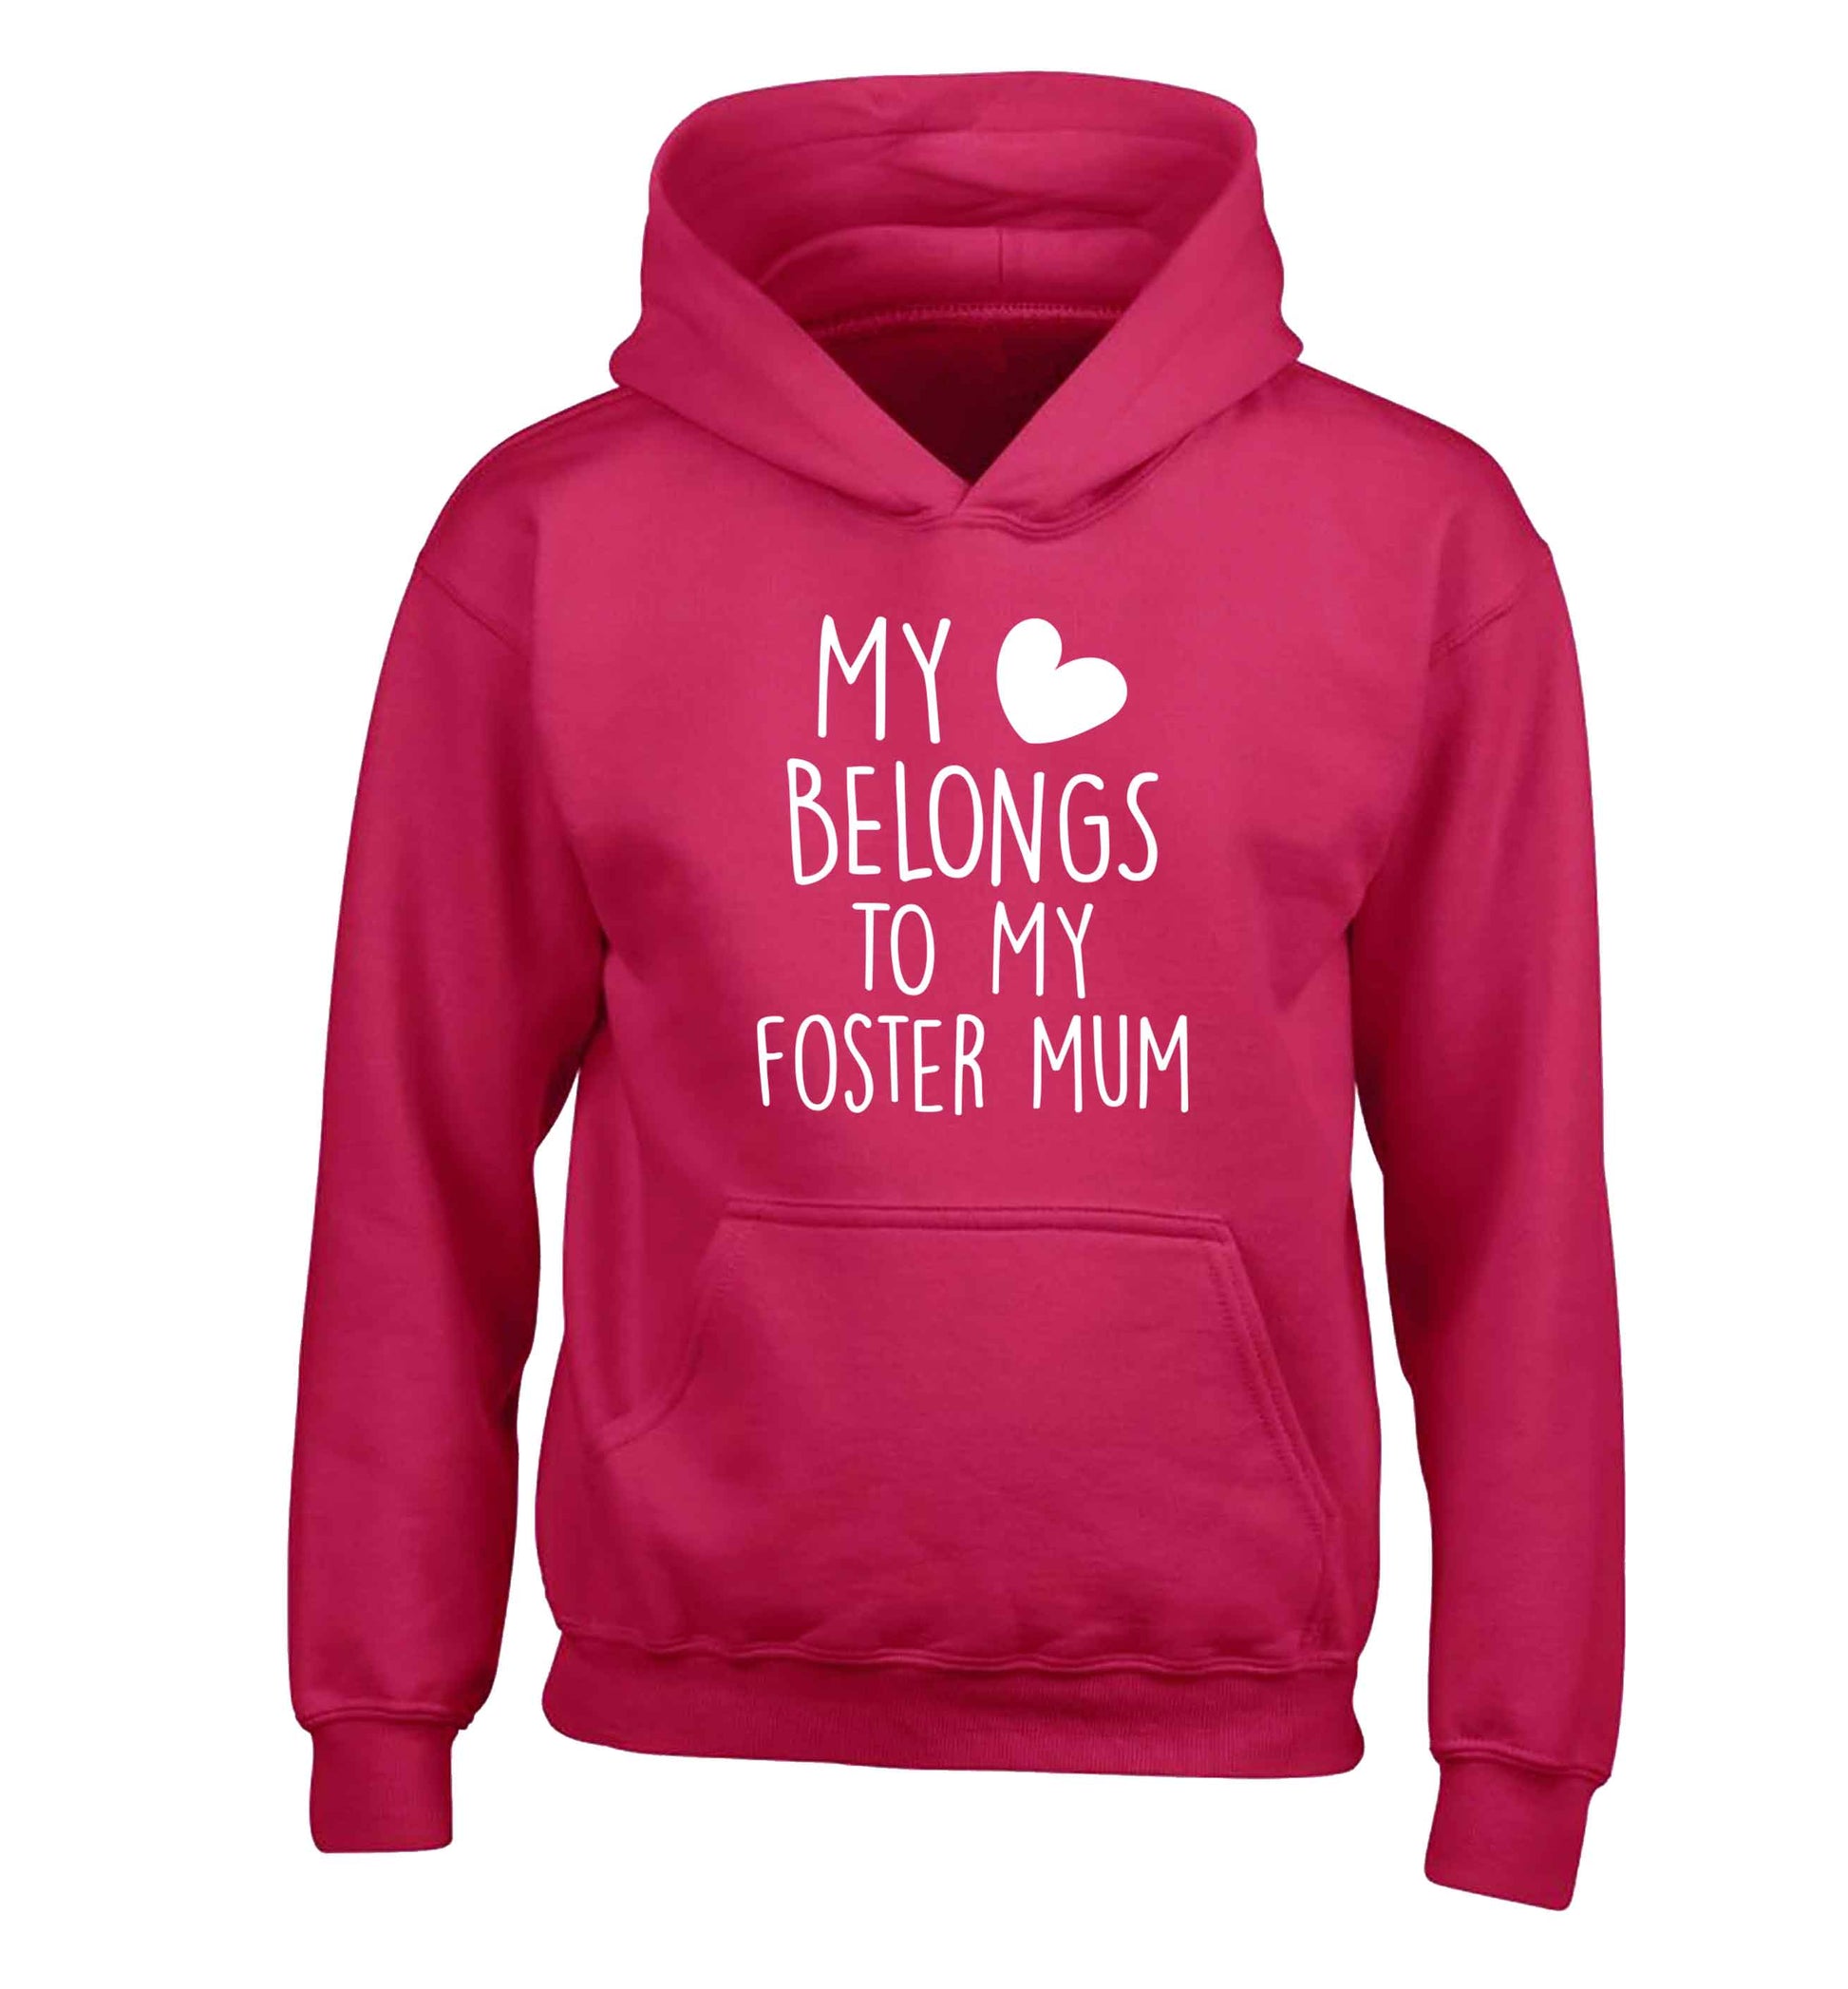 My heart belongs to my foster mum children's pink hoodie 12-13 Years